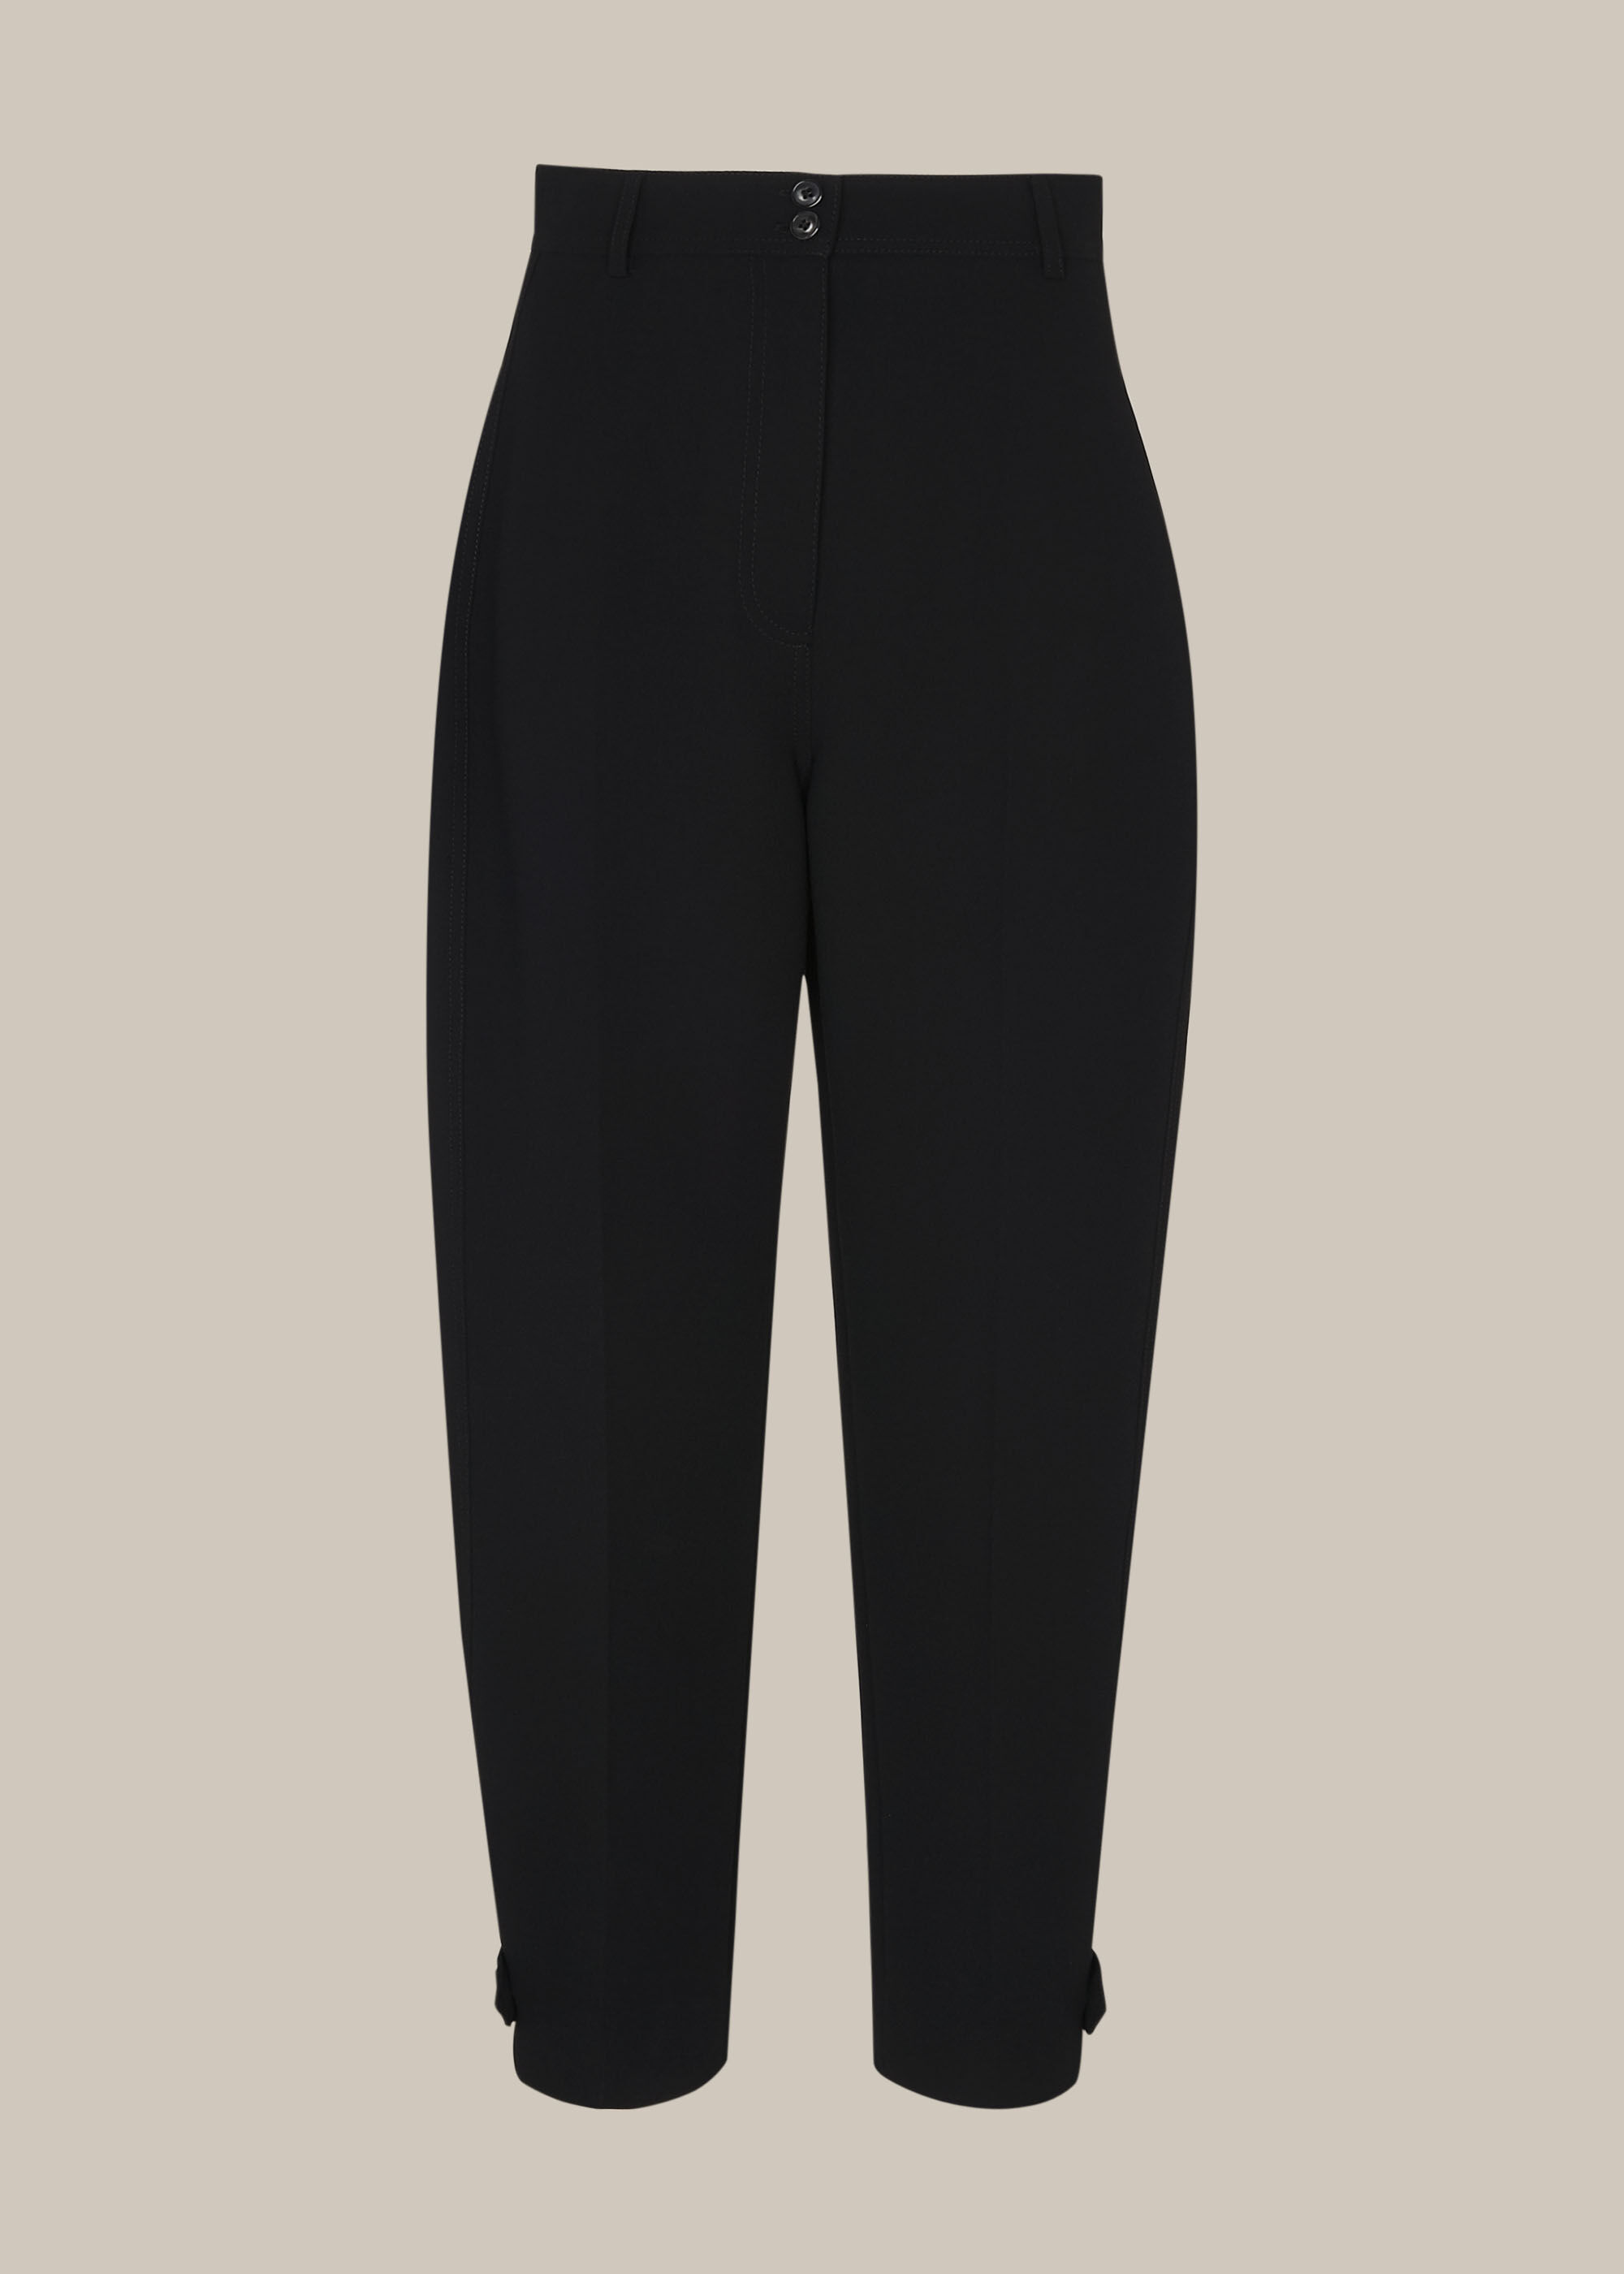 ASOS DESIGN ultimate jersey peg trousers in black | ASOS